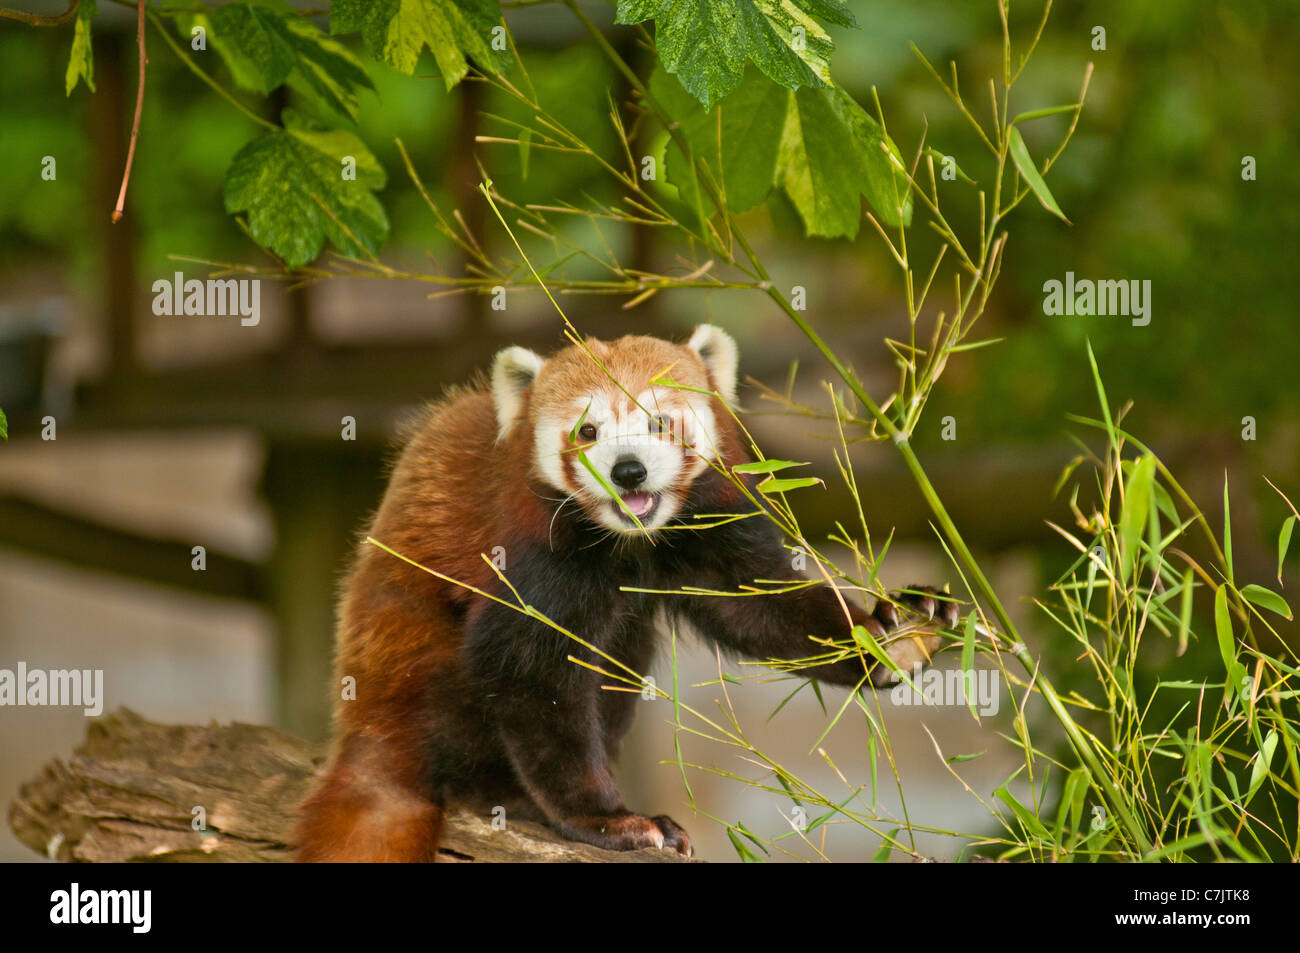 Panda rosso di mangiare il bambù in una struttura ad albero Foto Stock